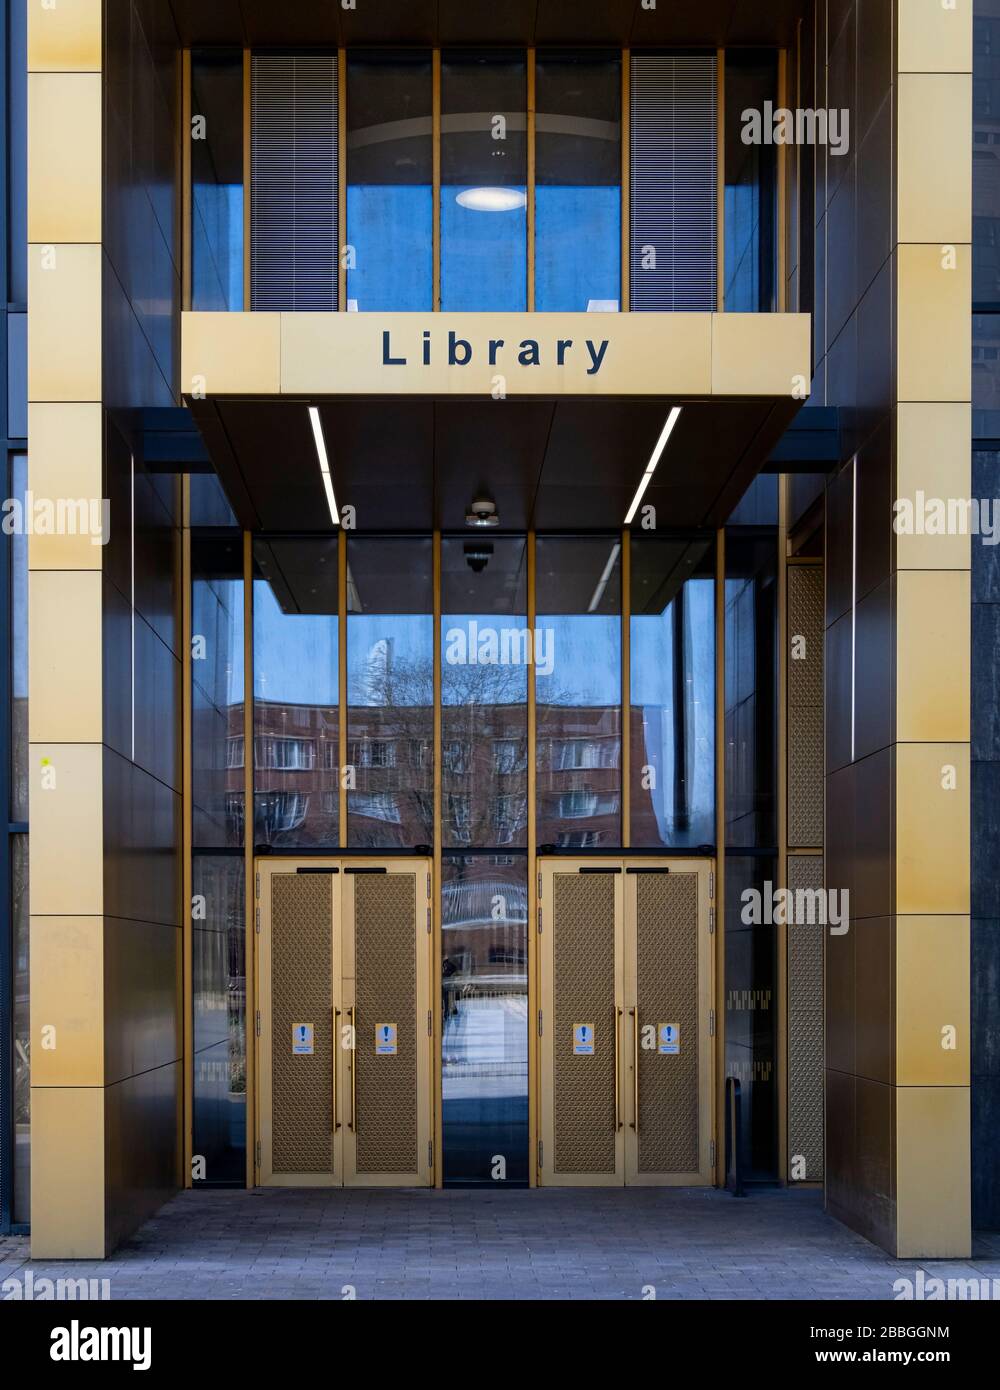 Entrada principal de la biblioteca, Campus de la Universidad de Birmingham, Birmingham, West Midlands, Inglaterra, Reino Unido Foto de stock